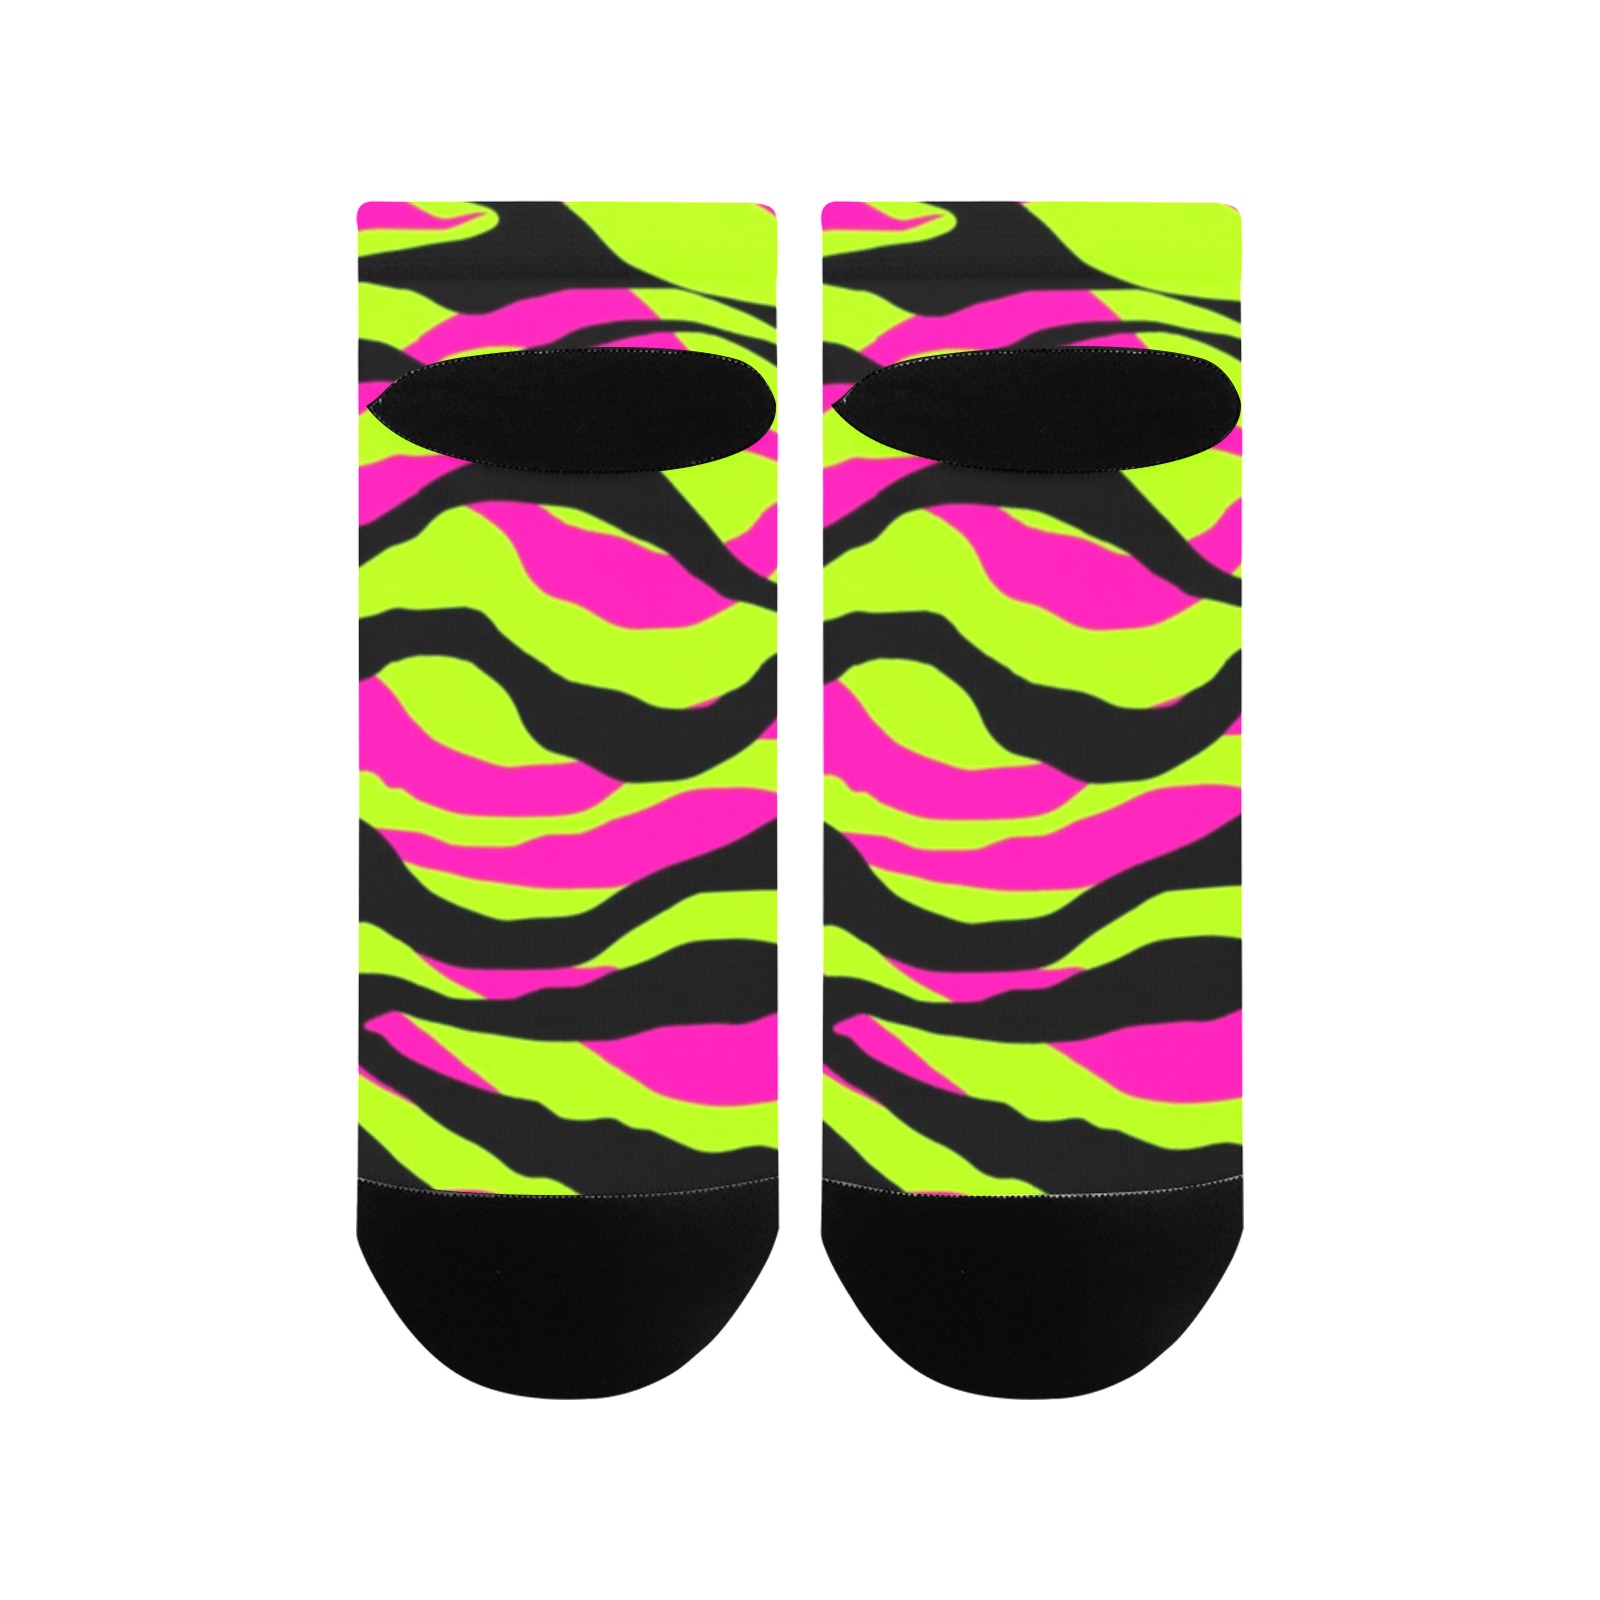 Pink, Neon Green & Black Tiger Stripe Socks Custom Socks Bright Socks Colorful Fun Socks Women's Ankle Socks